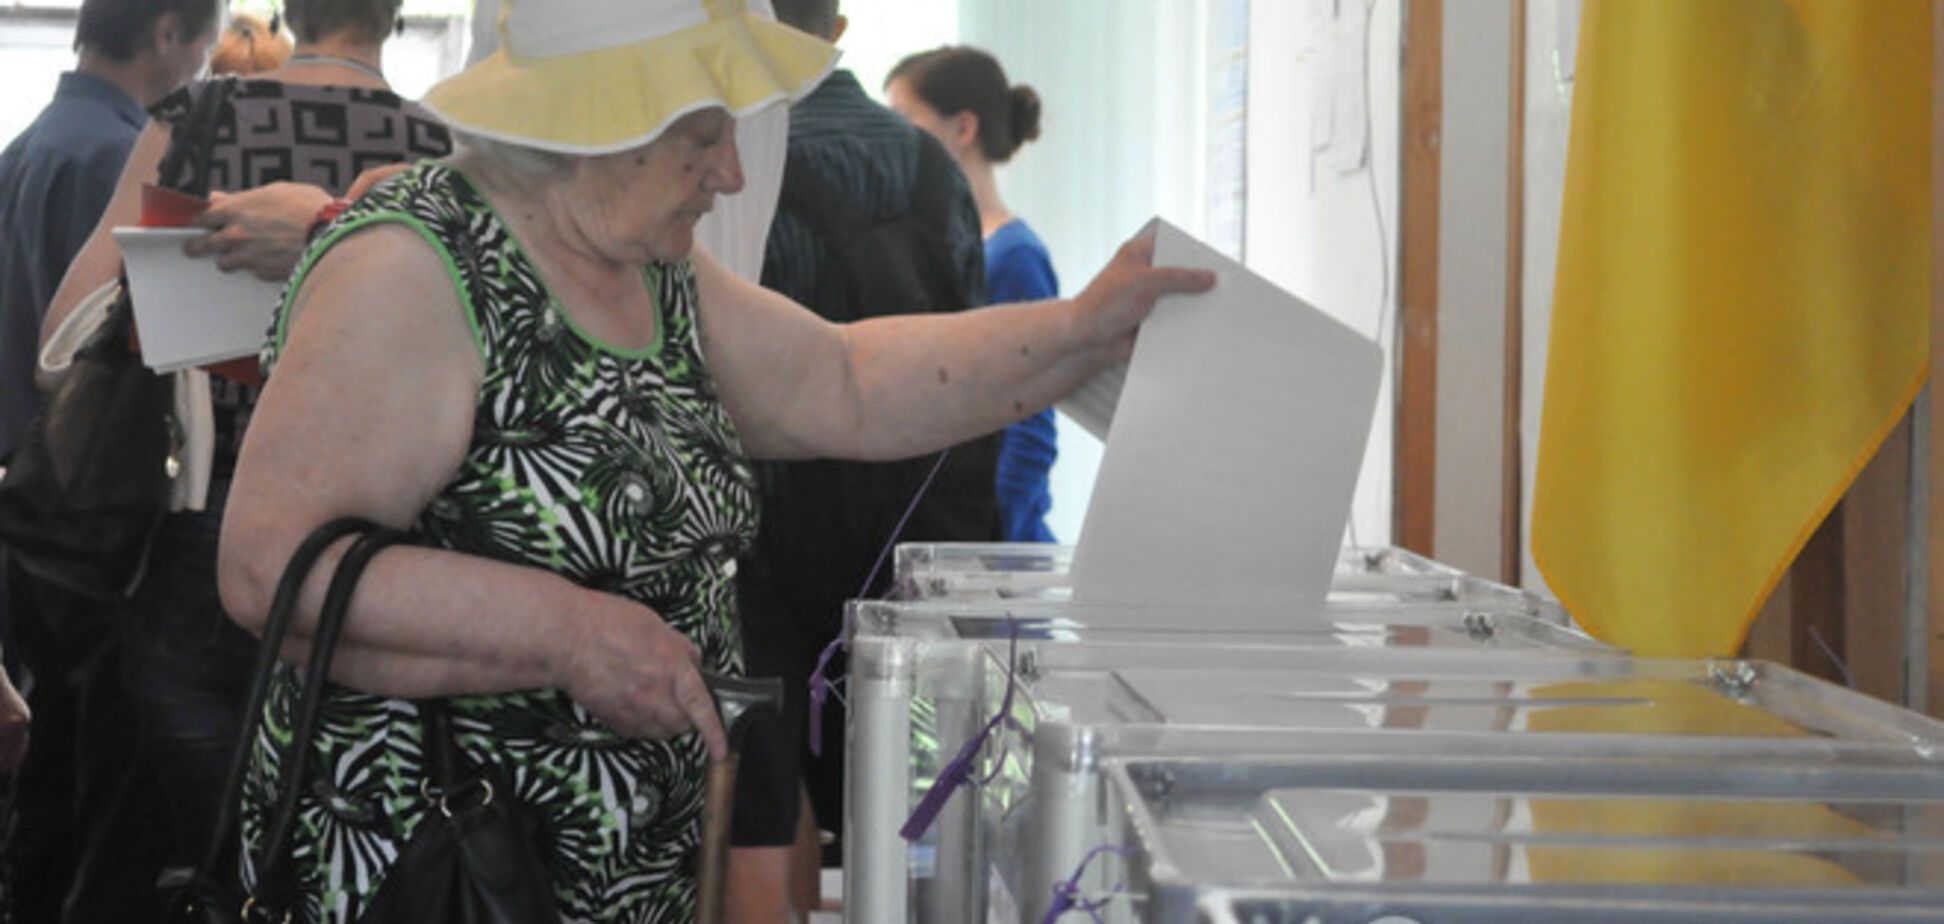 Явка виборців по Україні на 15.00 склала 40,32% - ЦВК